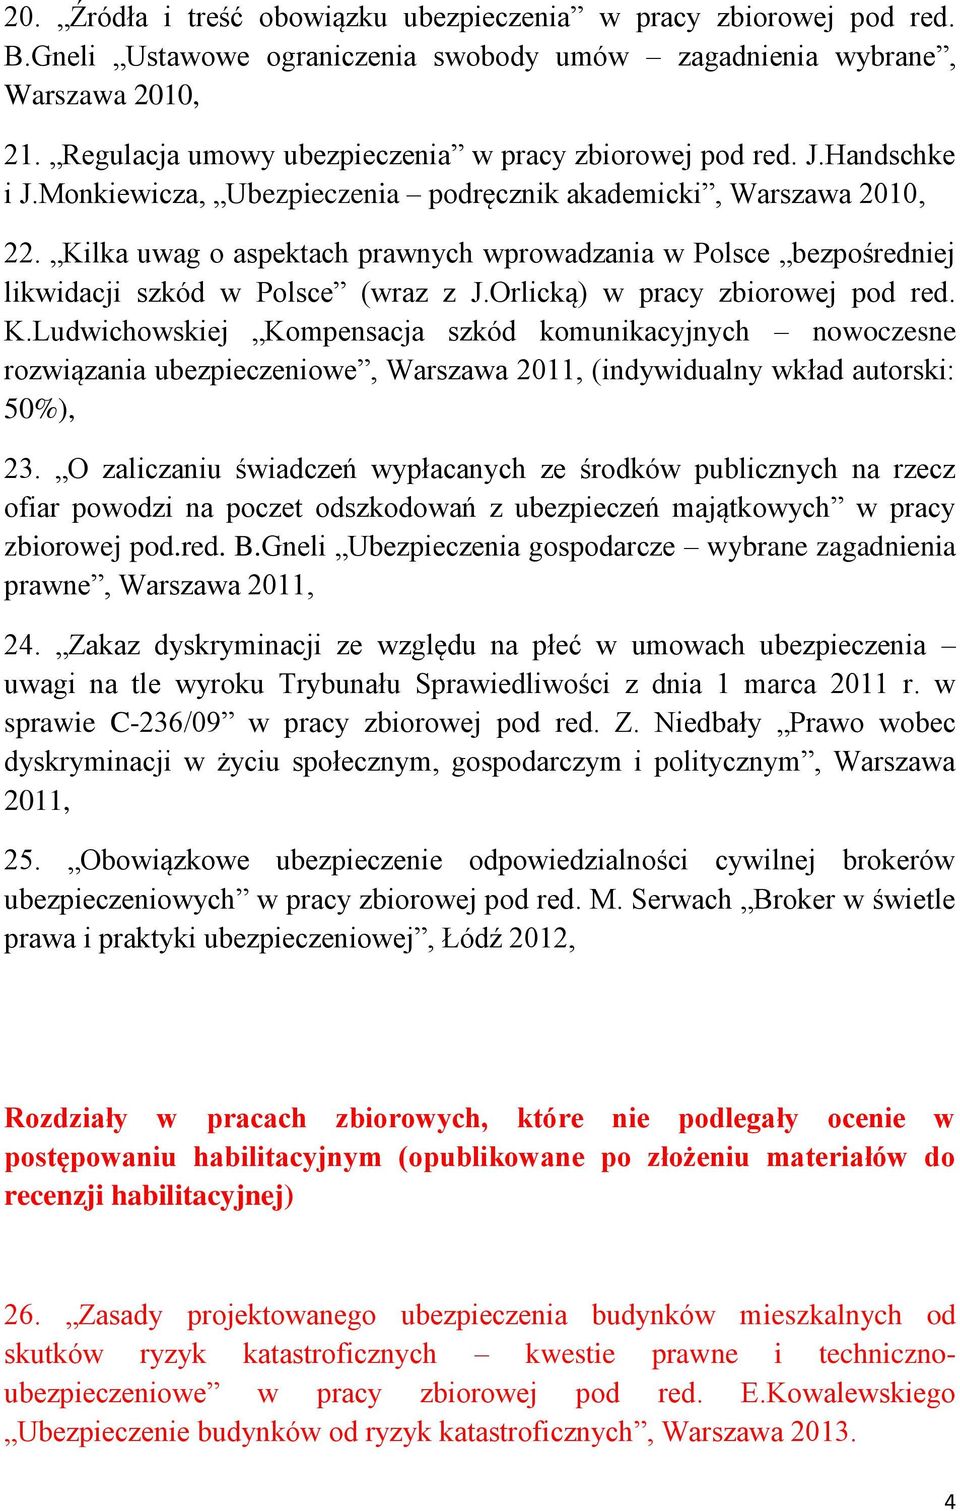 Kilka uwag o aspektach prawnych wprowadzania w Polsce bezpośredniej likwidacji szkód w Polsce (wraz z J.Orlicką) w pracy zbiorowej pod red. K.